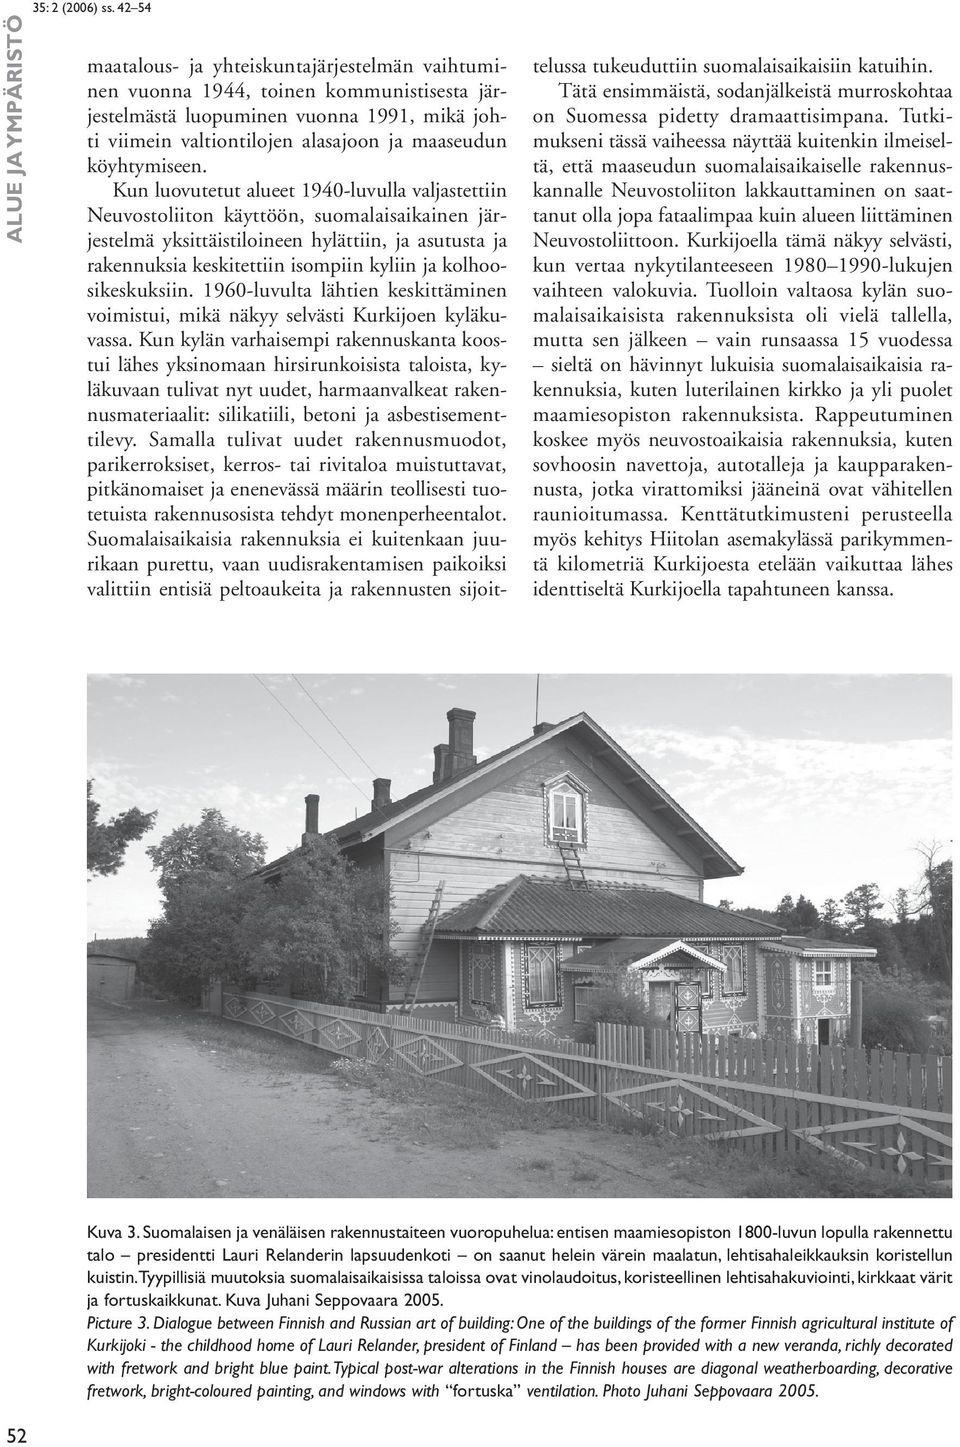 kolhoosikeskuksiin. 1960-luvulta lähtien keskittäminen voimistui, mikä näkyy selvästi Kurkijoen kyläkuvassa.